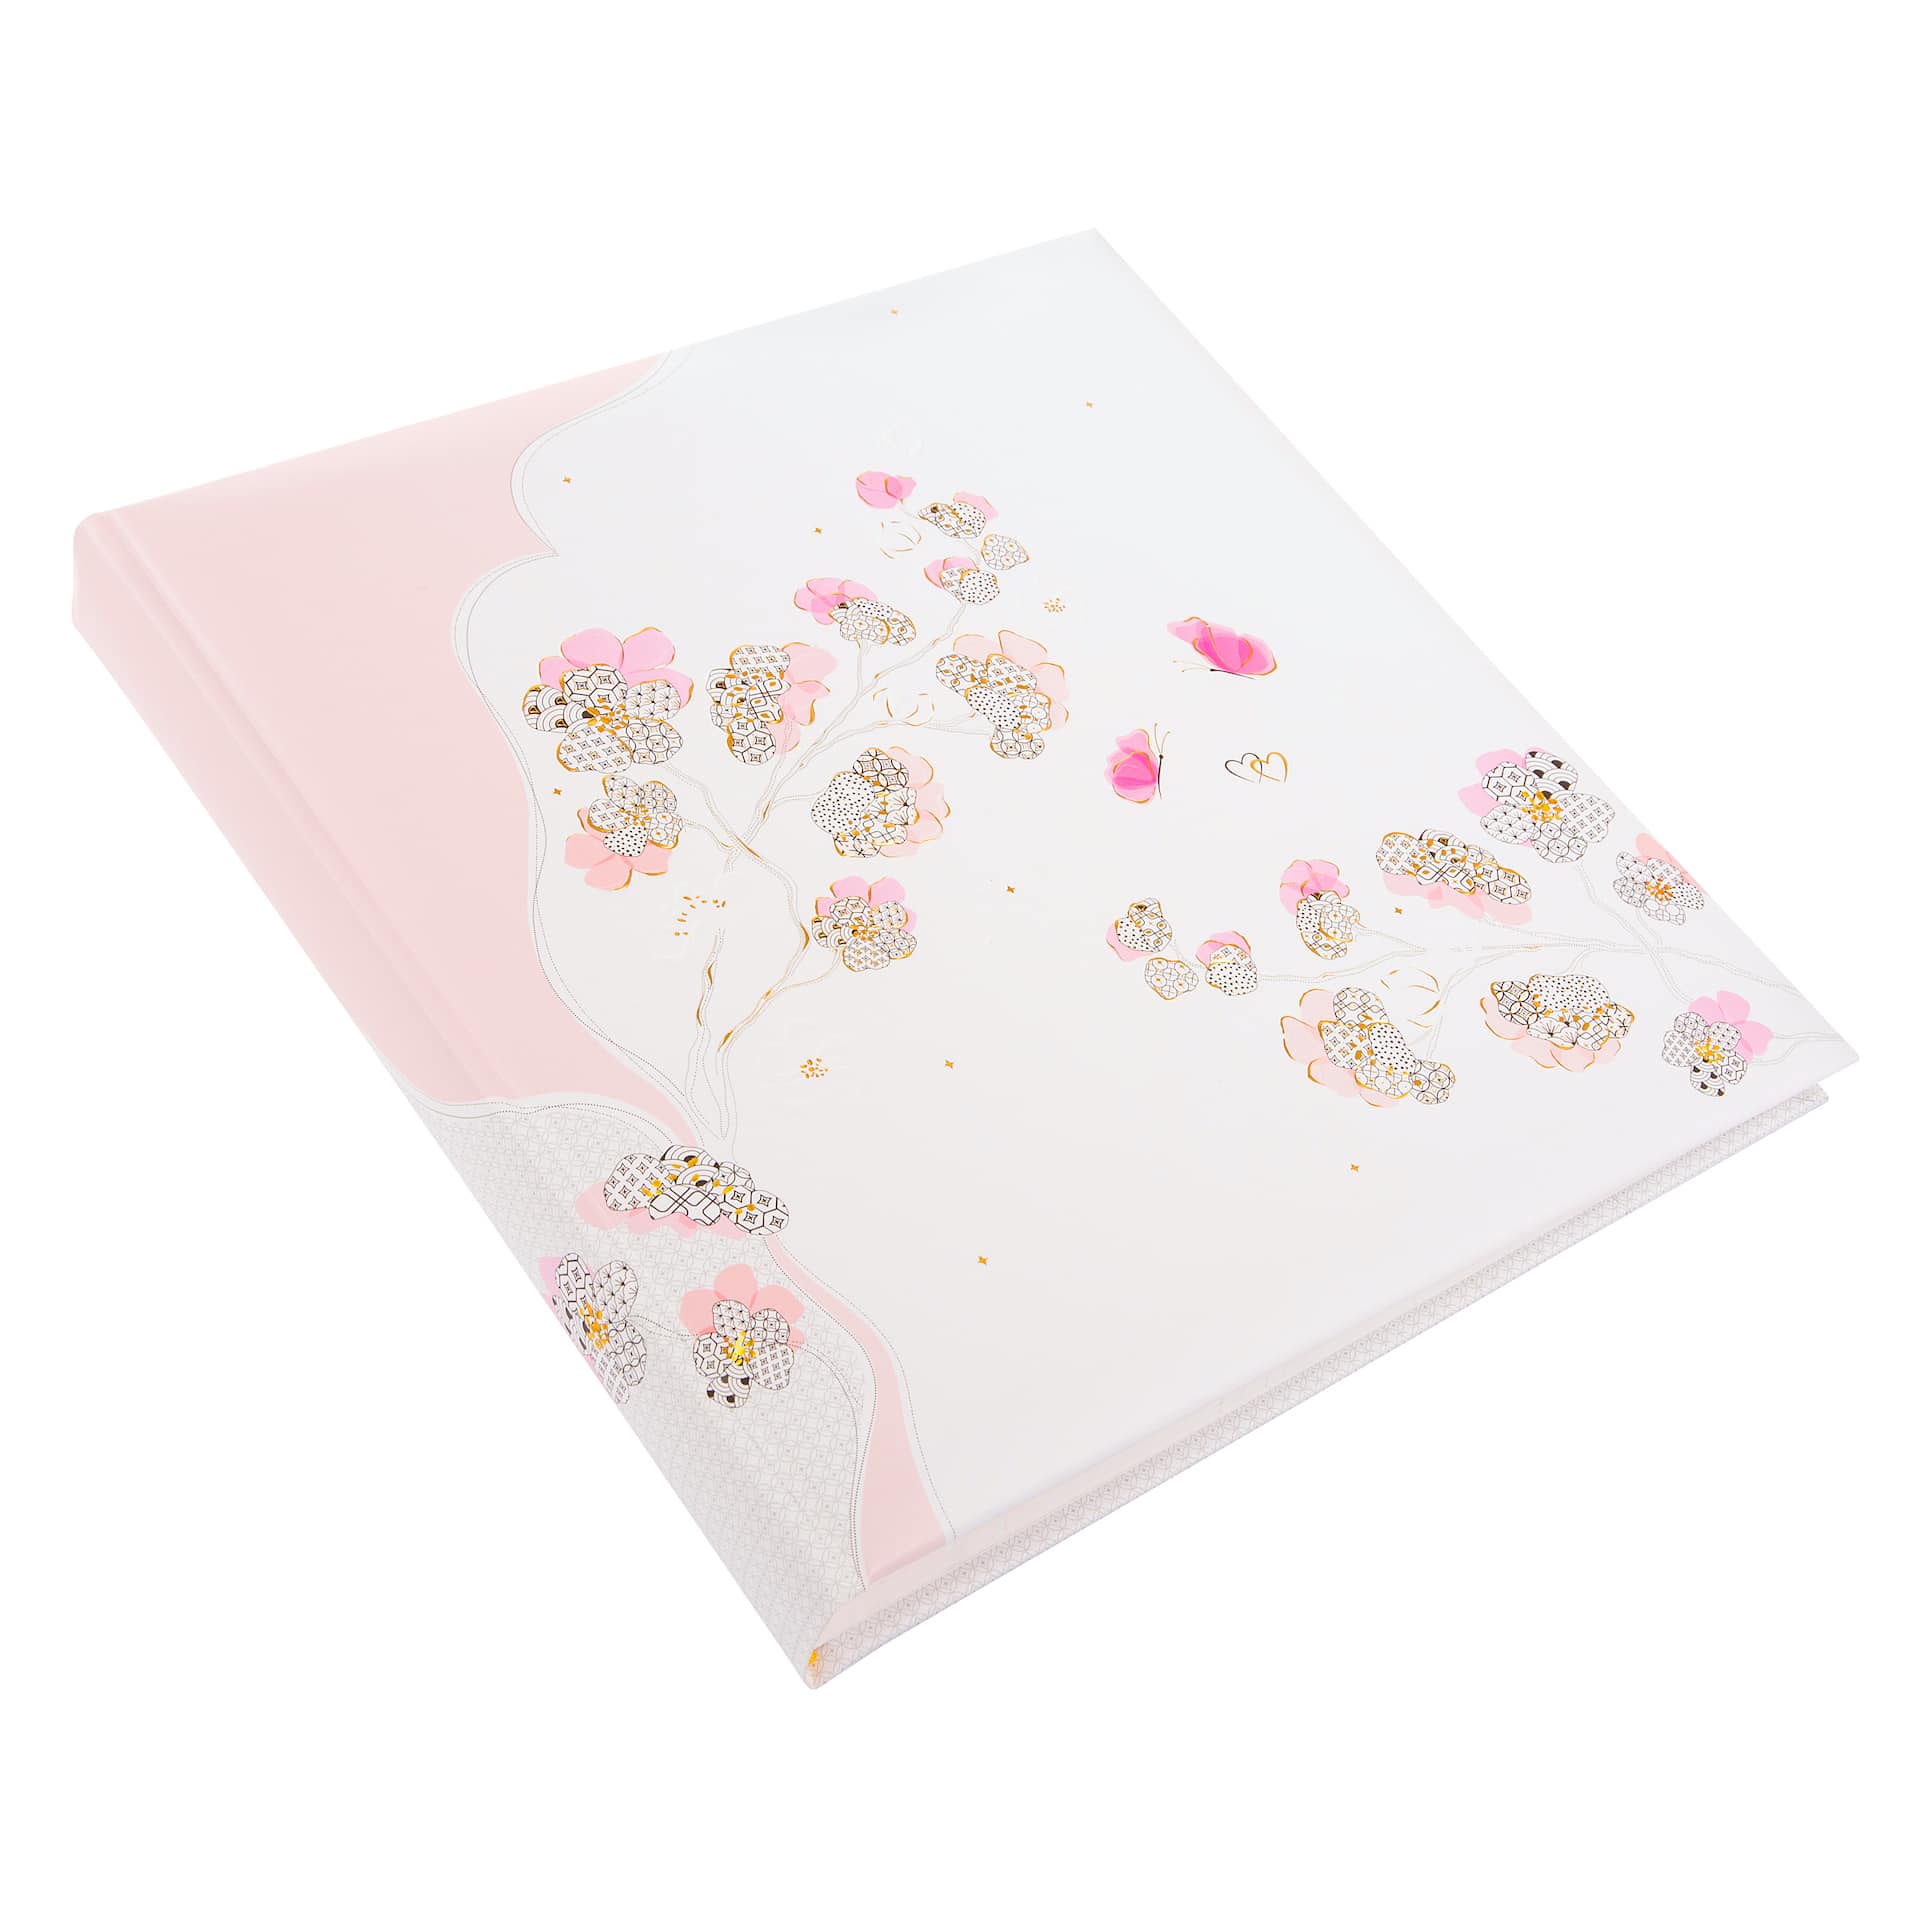 Wedding Album Cherry blossom goldbuch_08387_B